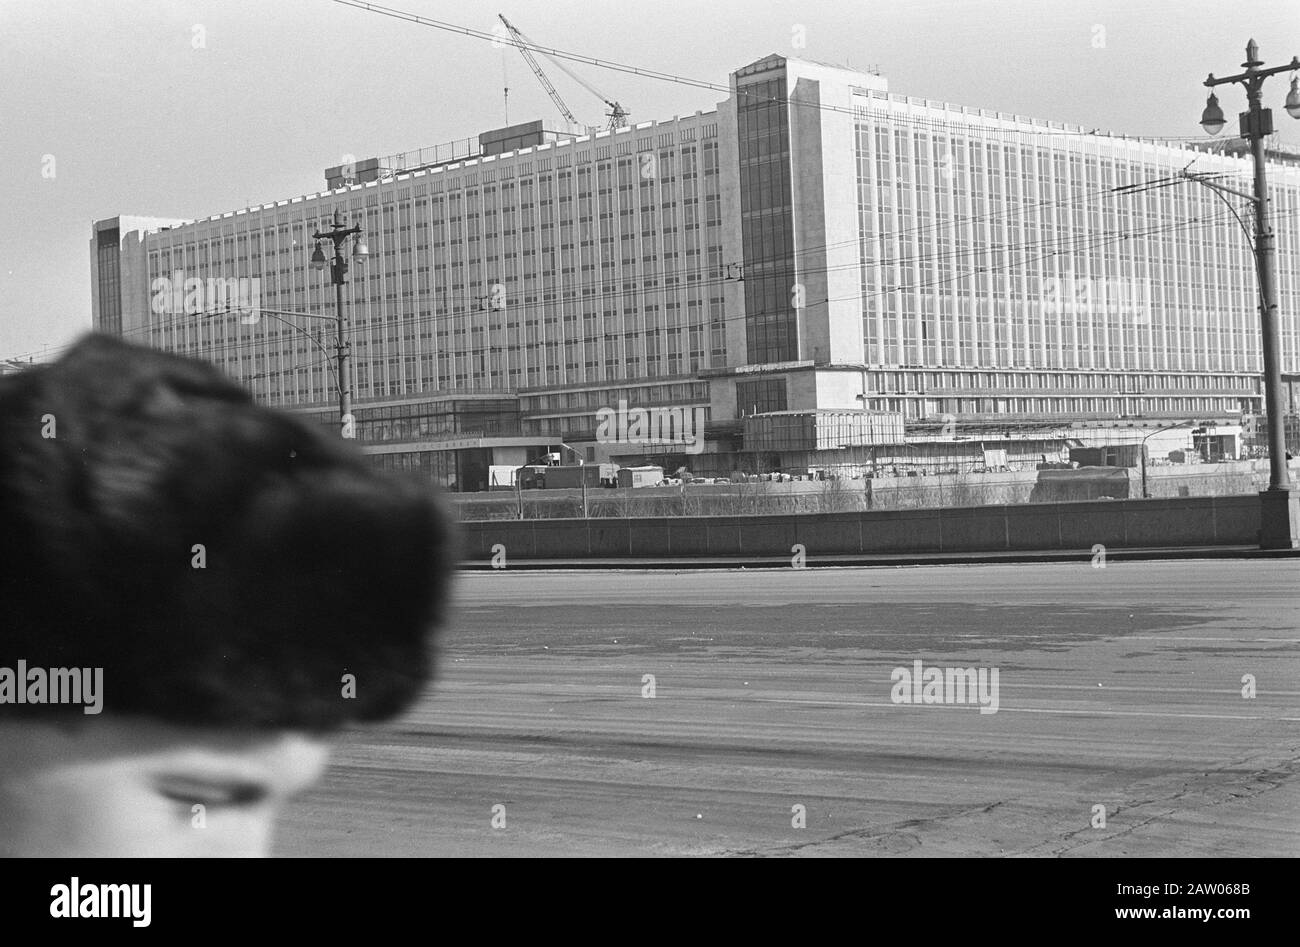 Moskau, Nummer 6 und 7 neues Hotel Russland, Nr. 8 linker Kreml und Rechte Basil's Kathedrale, Nr. 9 Kreml Datum: 27. Februar 1967 Standort: Moskau, Russland Schlüsselwörter: Hotels Stockfoto